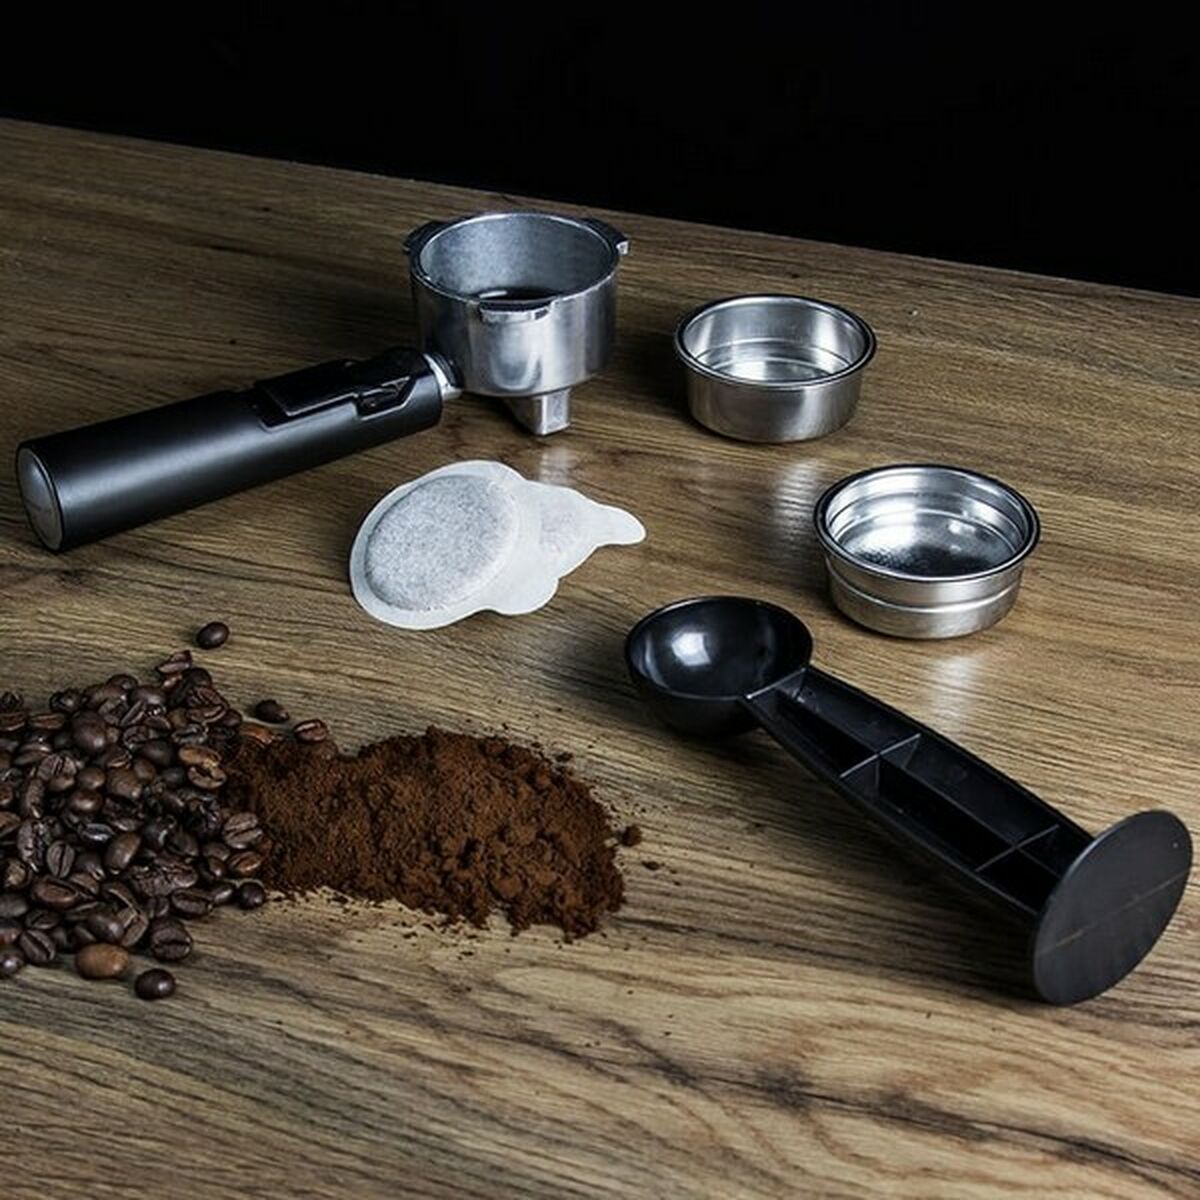 Manuelle Express-Kaffeemaschine Cecotec Power Espresso 20 1,5 L 850W Schwarz Rostfreier Stahl - CA International 